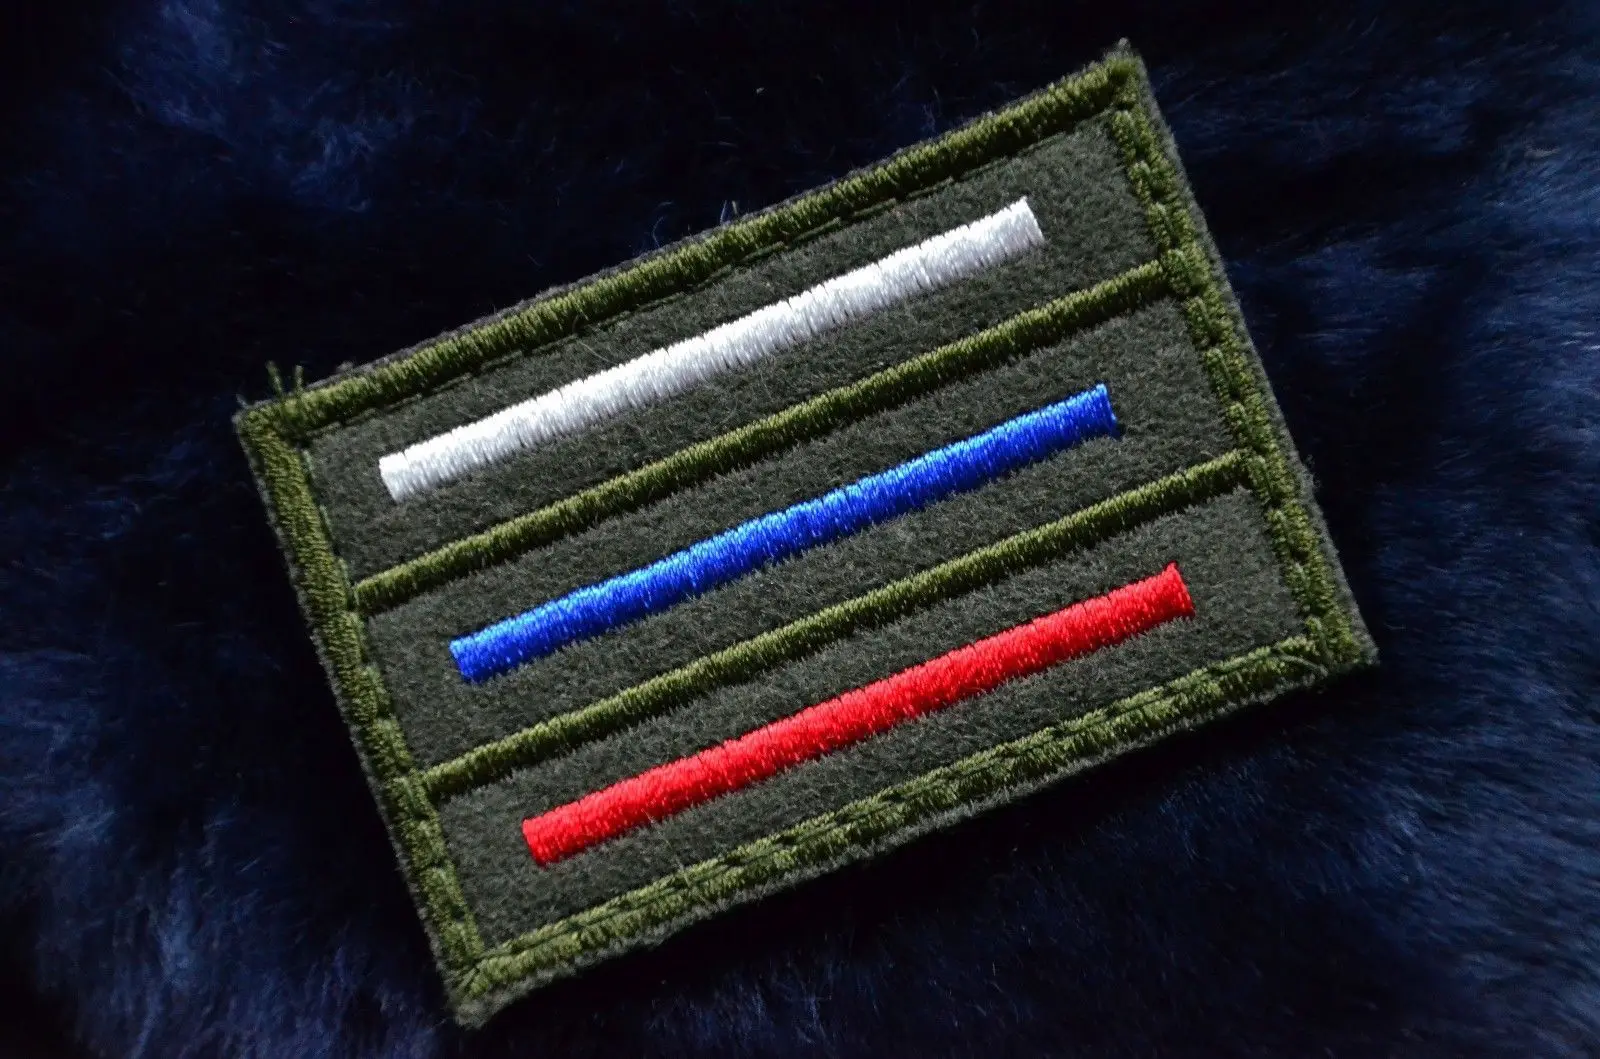 Русская KGB Fusibo FSB pocnr 3D военная армия тактический боевой вышивка заплатка для одежды эмблема Аппликации, бейджи - Цвет: 6